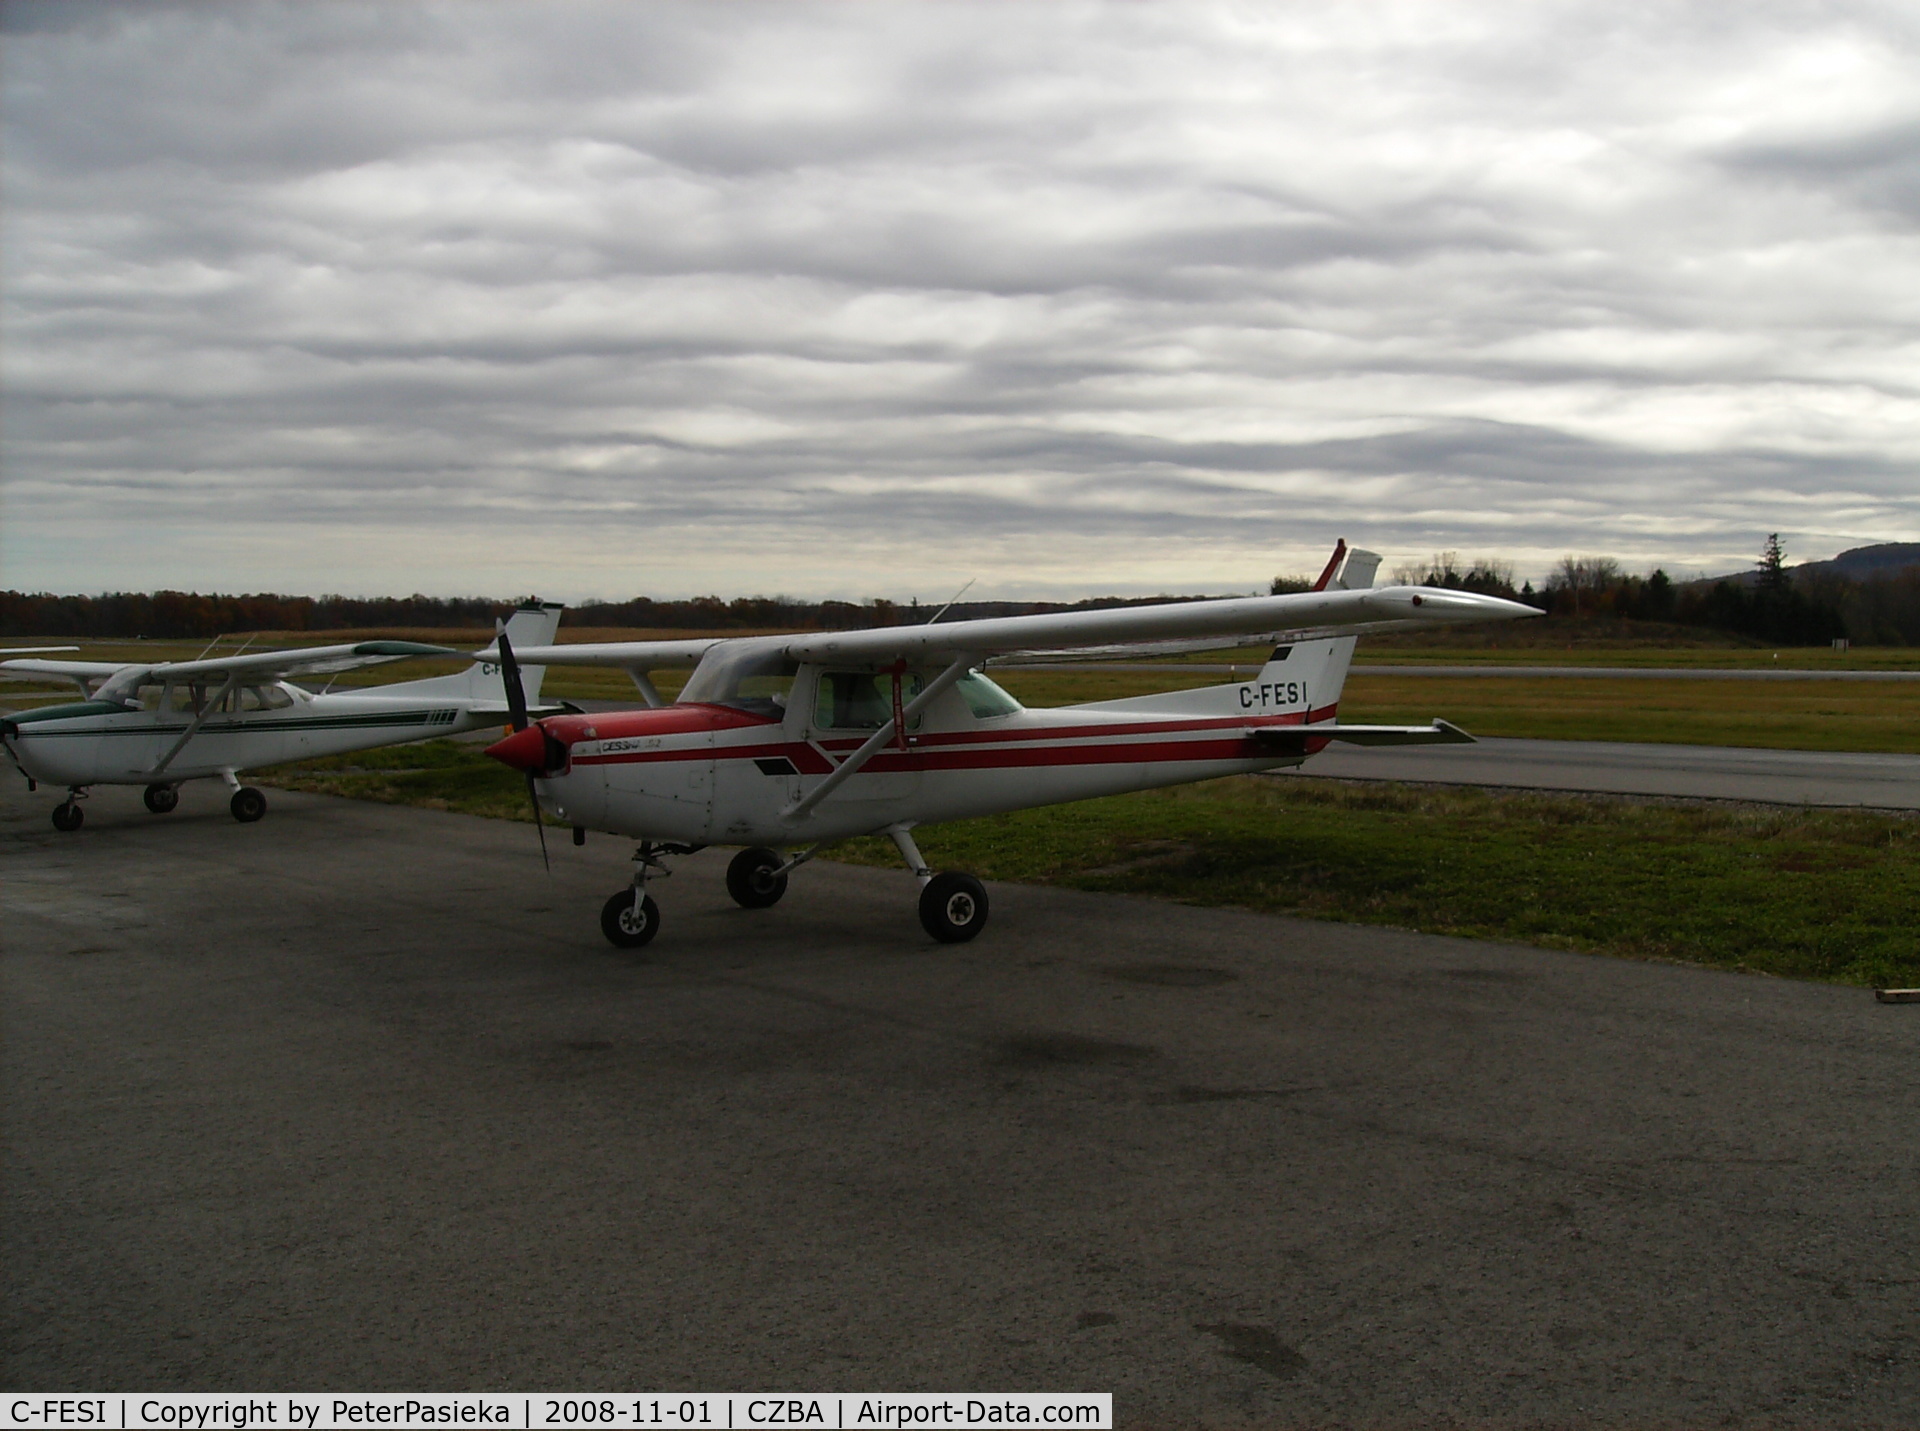 C-FESI, 1979 Cessna 152 C/N 15283064, Spectrum Airways training aircraft, Burlington Airport, Ontario Canada